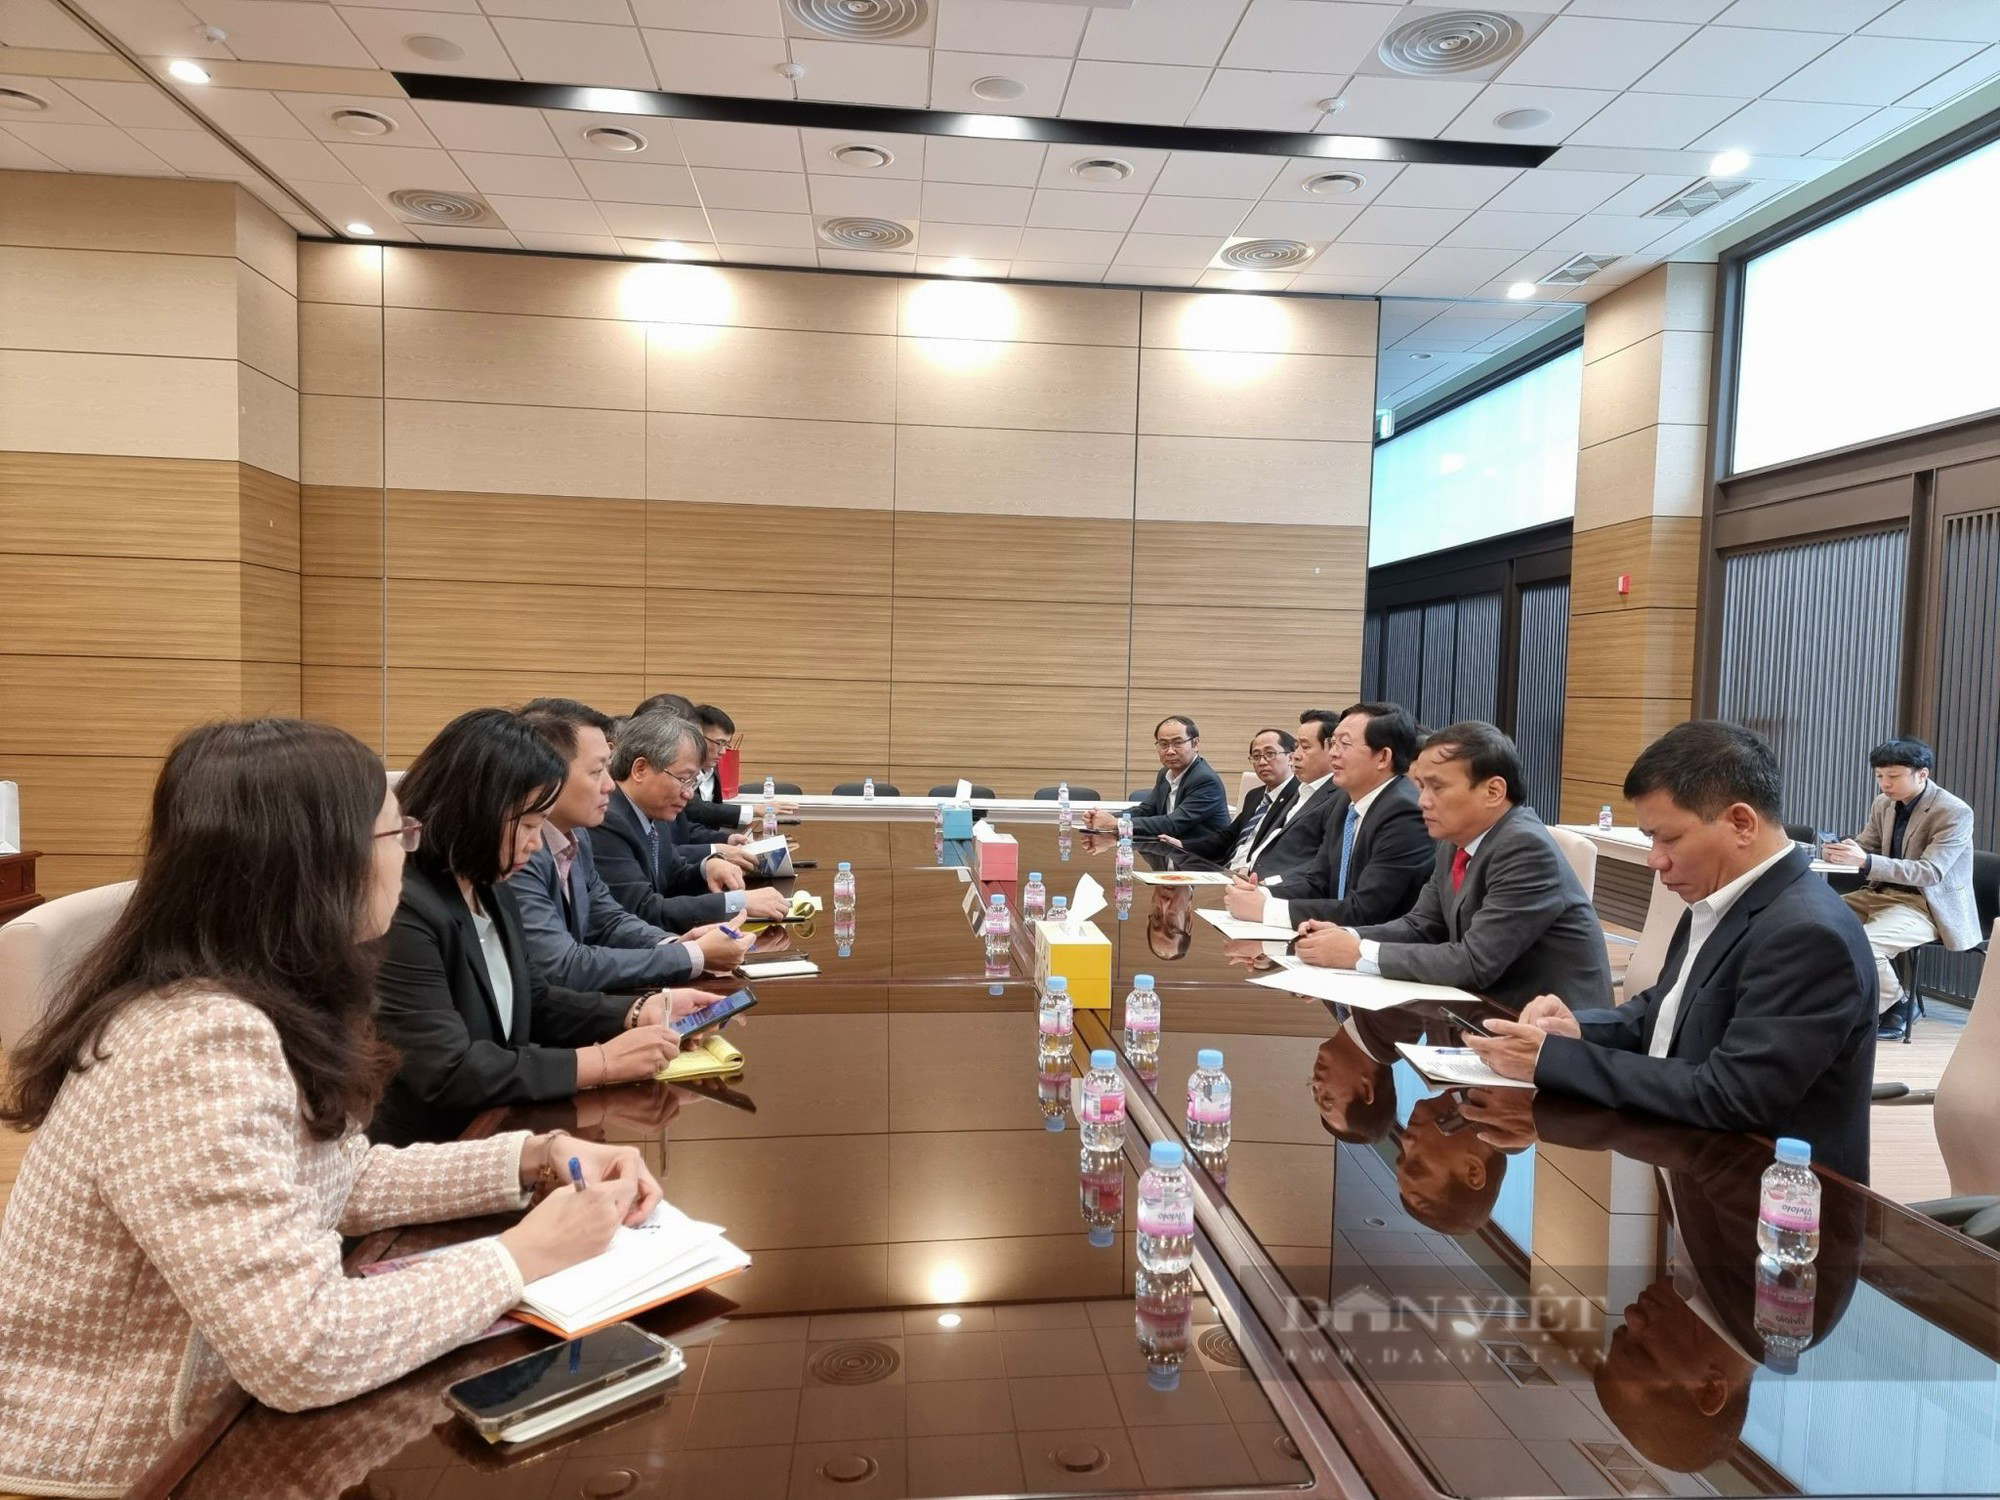 Bí thư Bình Định Hồ Quốc Dũng, Phó Chủ tịch tỉnh Nguyễn Tự Công Hoàng đi Hàn Quốc kêu gọi đầu tư - Ảnh 4.